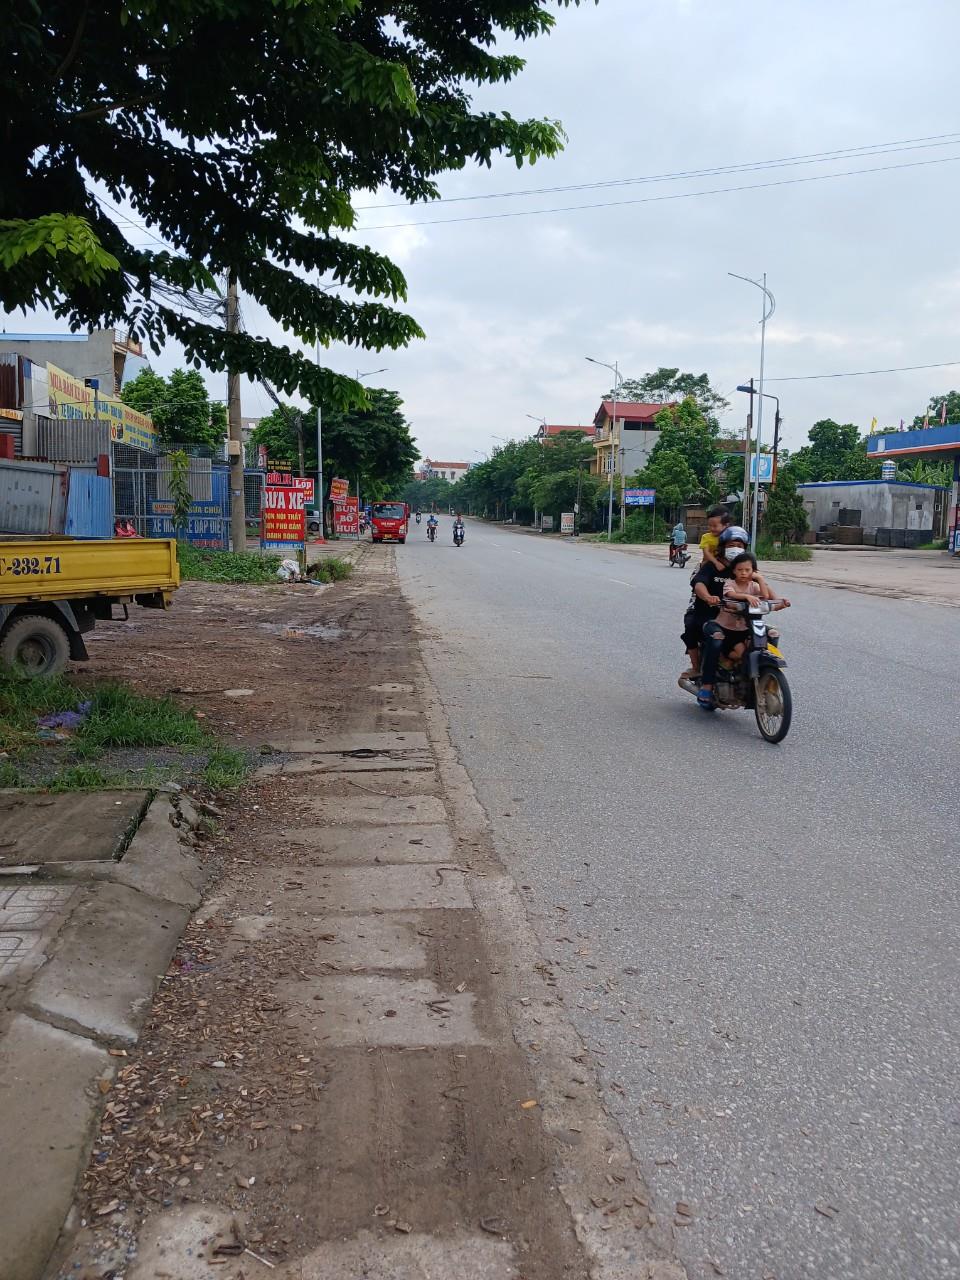 CẦN BÁN CĂN NHÀ 3 TẦNG MỚI ĐẸP DUY NHẤT tại phường trung thành TP Phổ Yên tổng 147m trên mặt đường - Ảnh 2